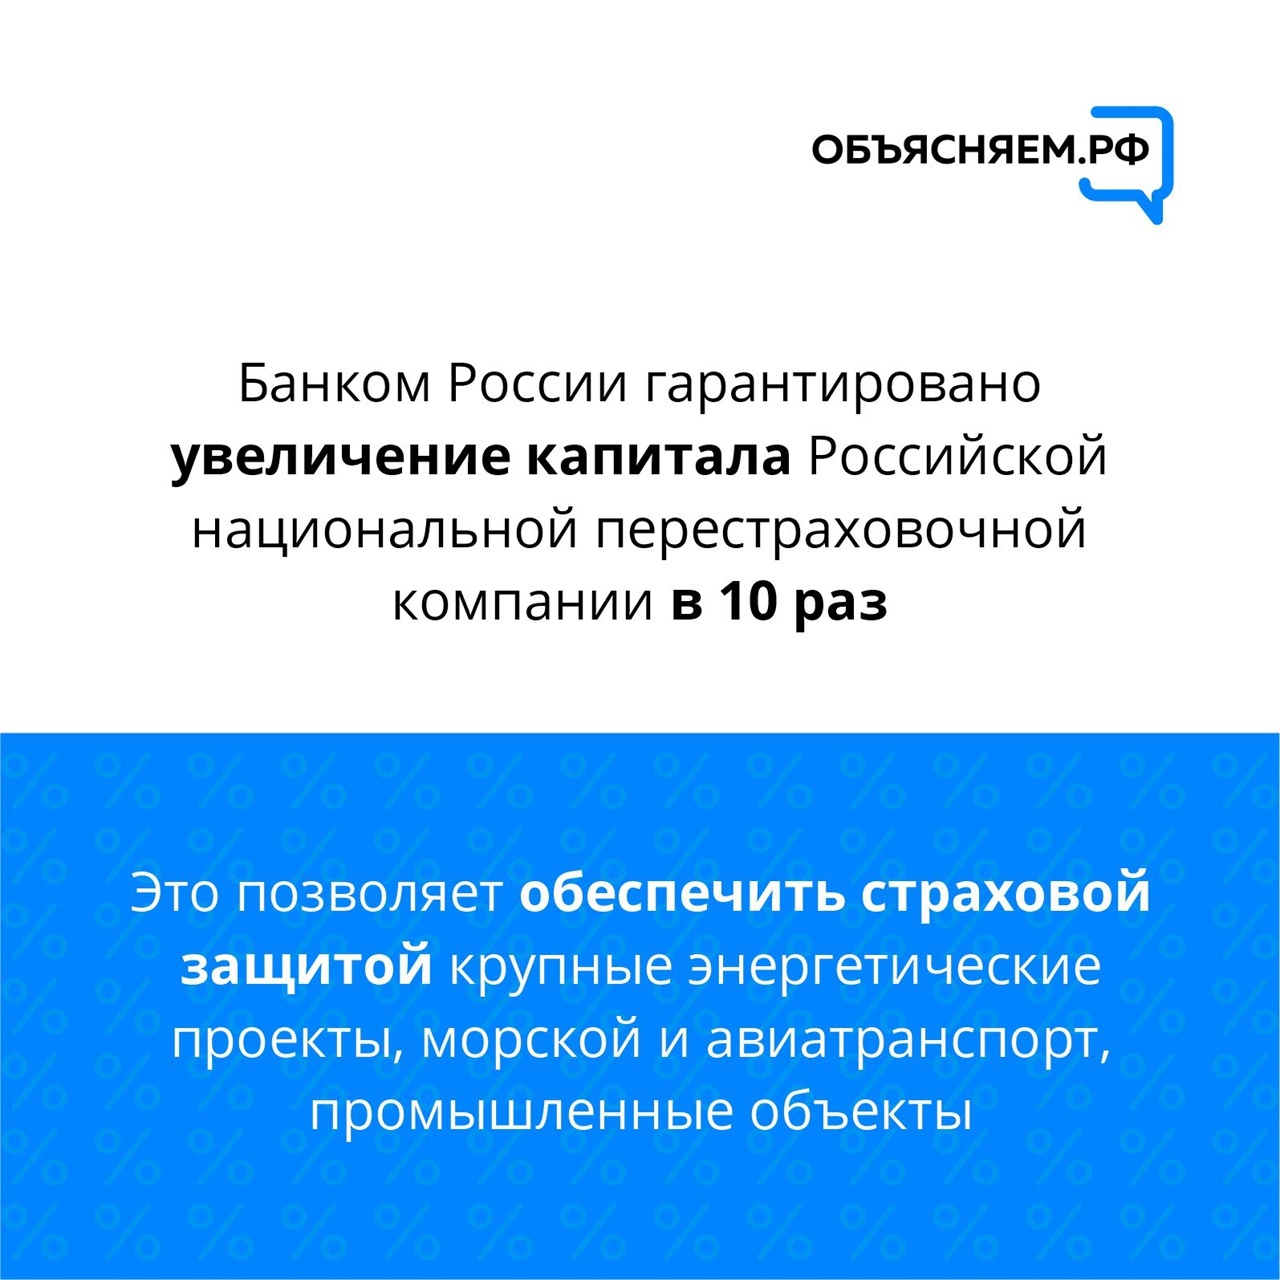 О ключевых мерах Банка России по поддержке граждан, бизнеса и стабилизации финансового рынка – в наших карточках.